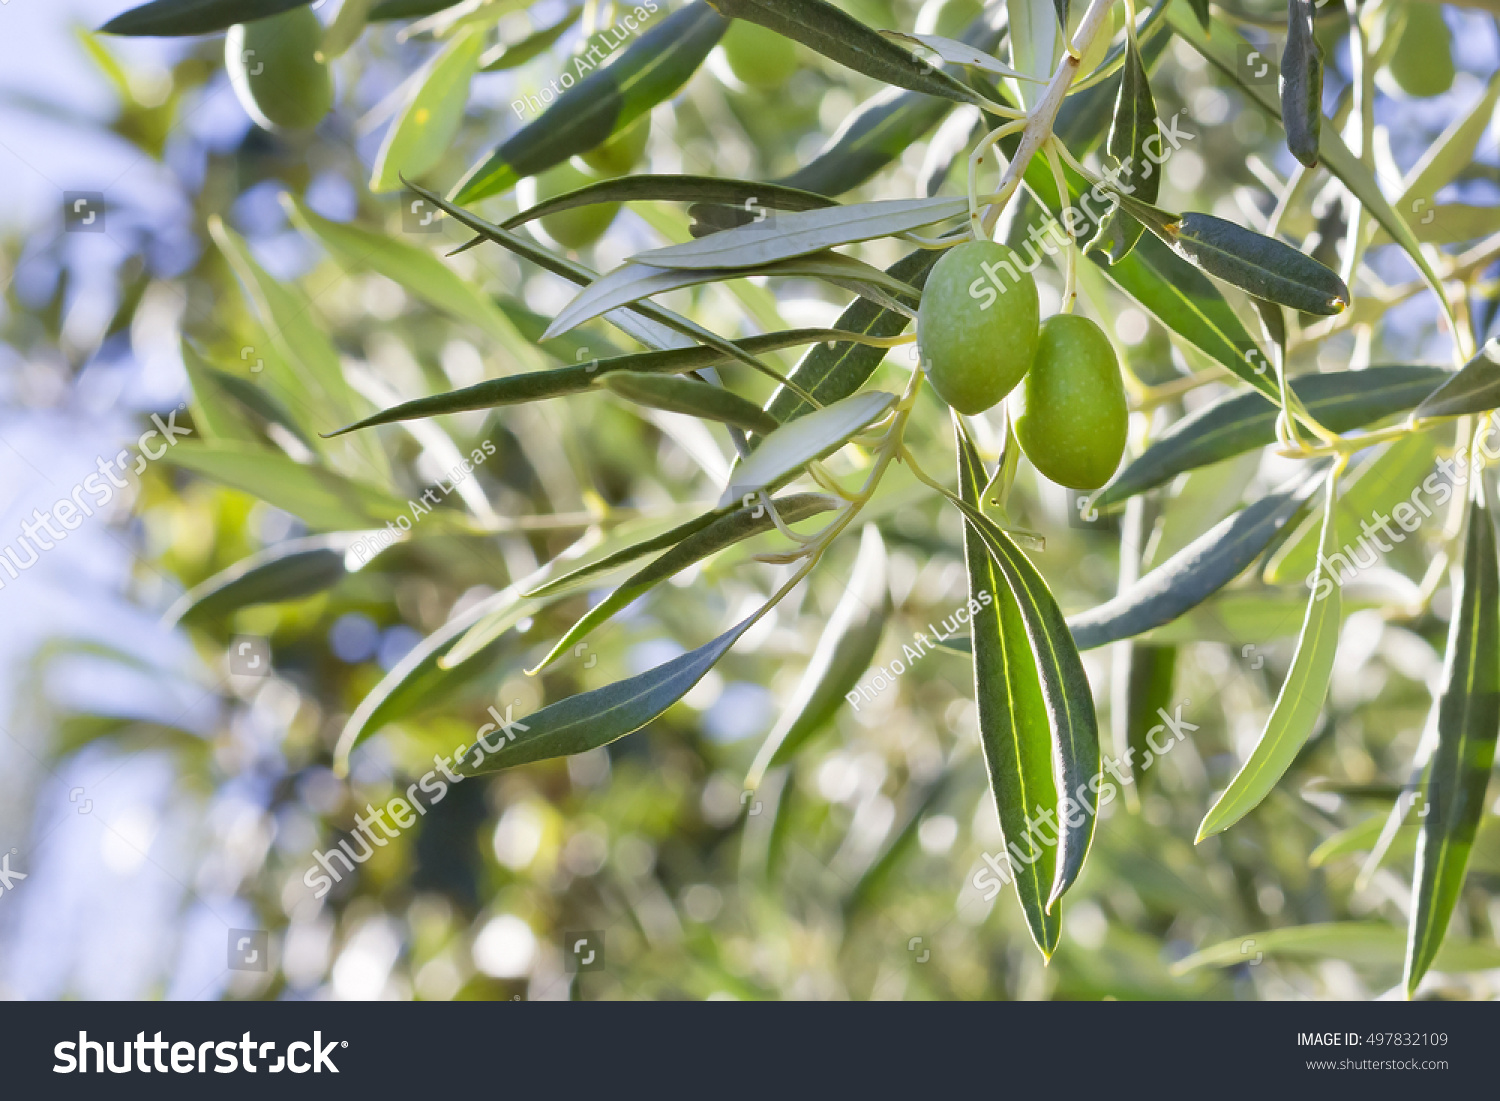 A couple of green olives (Olea europaea) #497832109